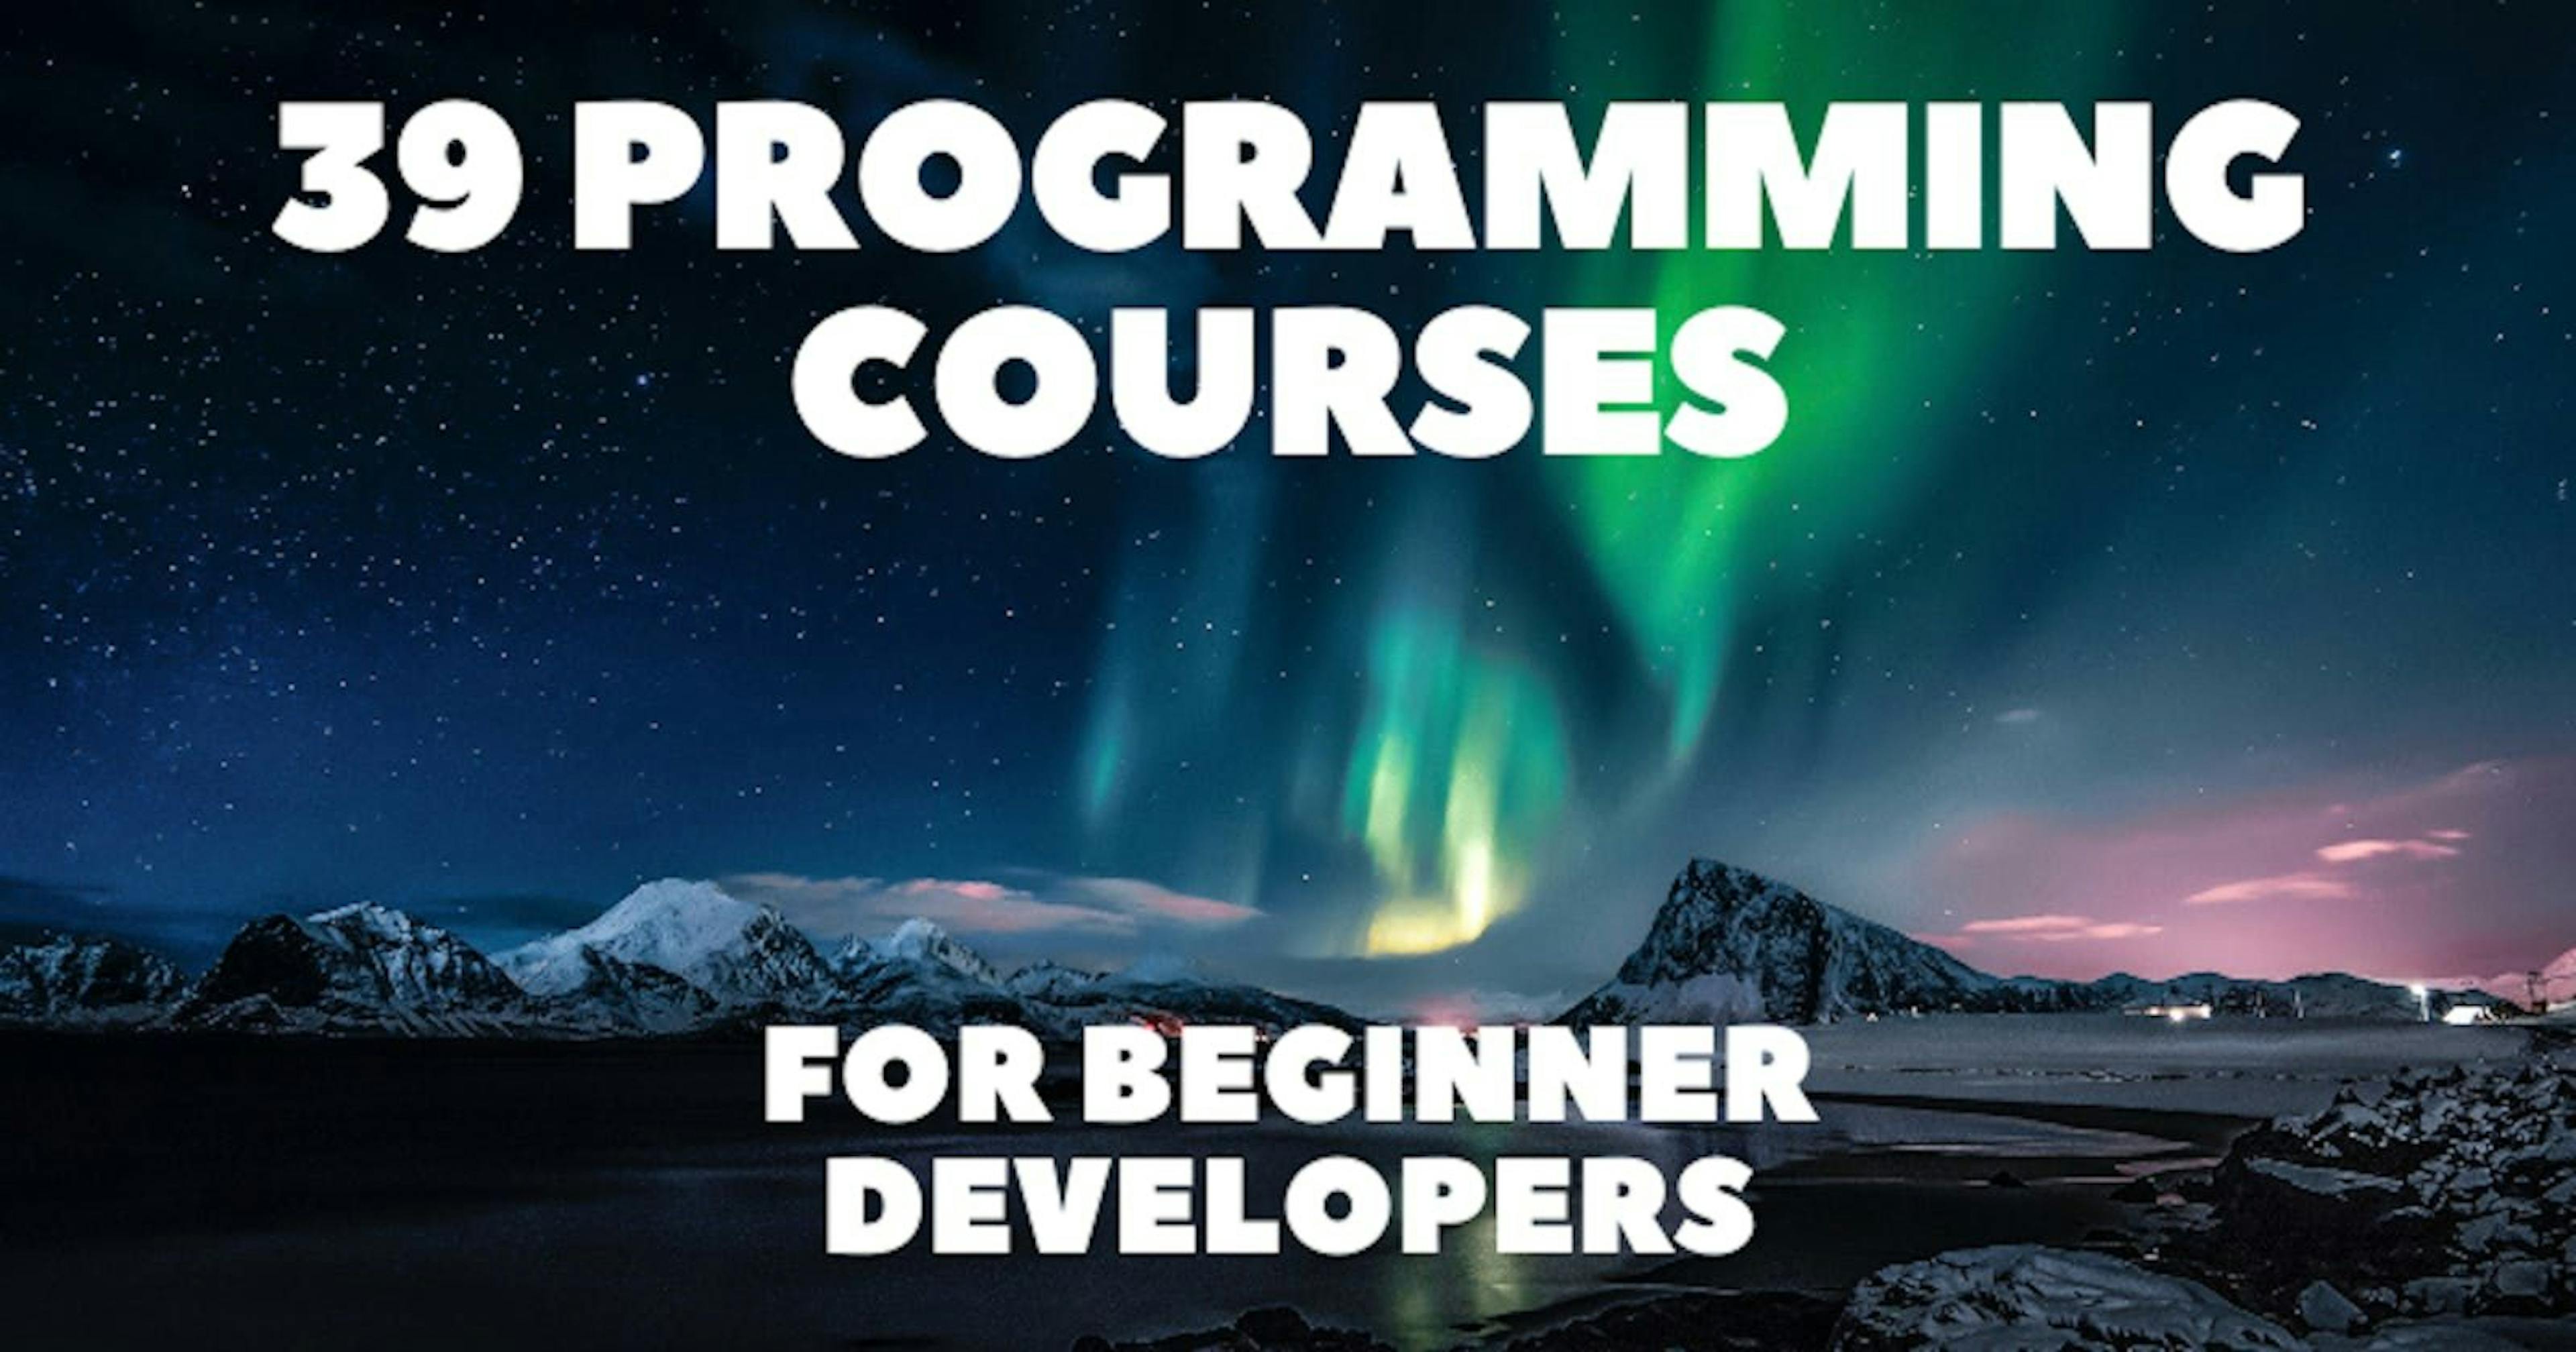 featured image - Se você está aprendendo a programar, confira estes 39 cursos de programação👨‍💻👩‍💻